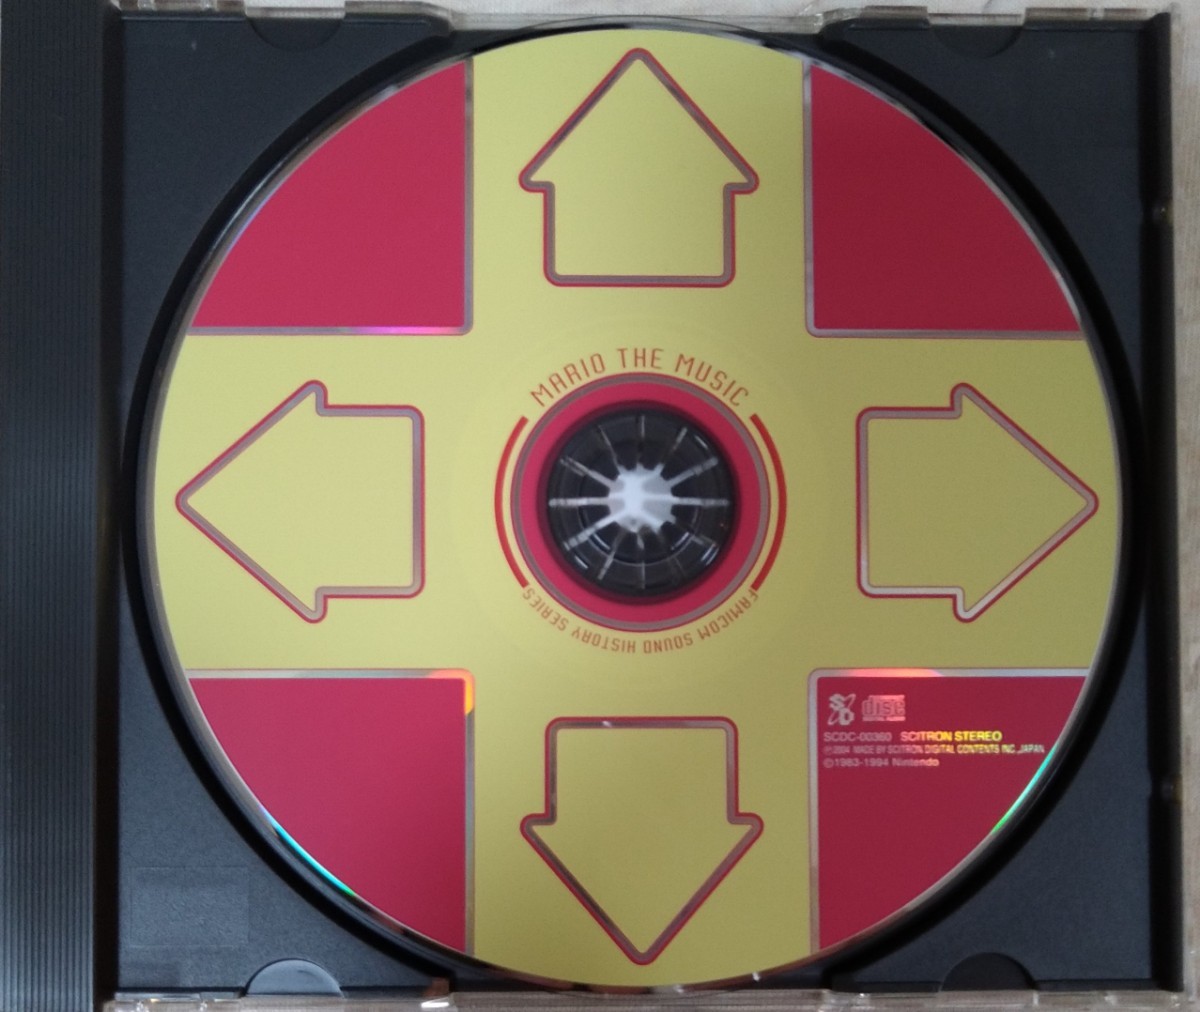 ファミコン サウンドヒストリー シリーズ マリオ ザ ミュージック 旧規格国内盤中古CD Famicom Sound History Series Mario The Music_画像3